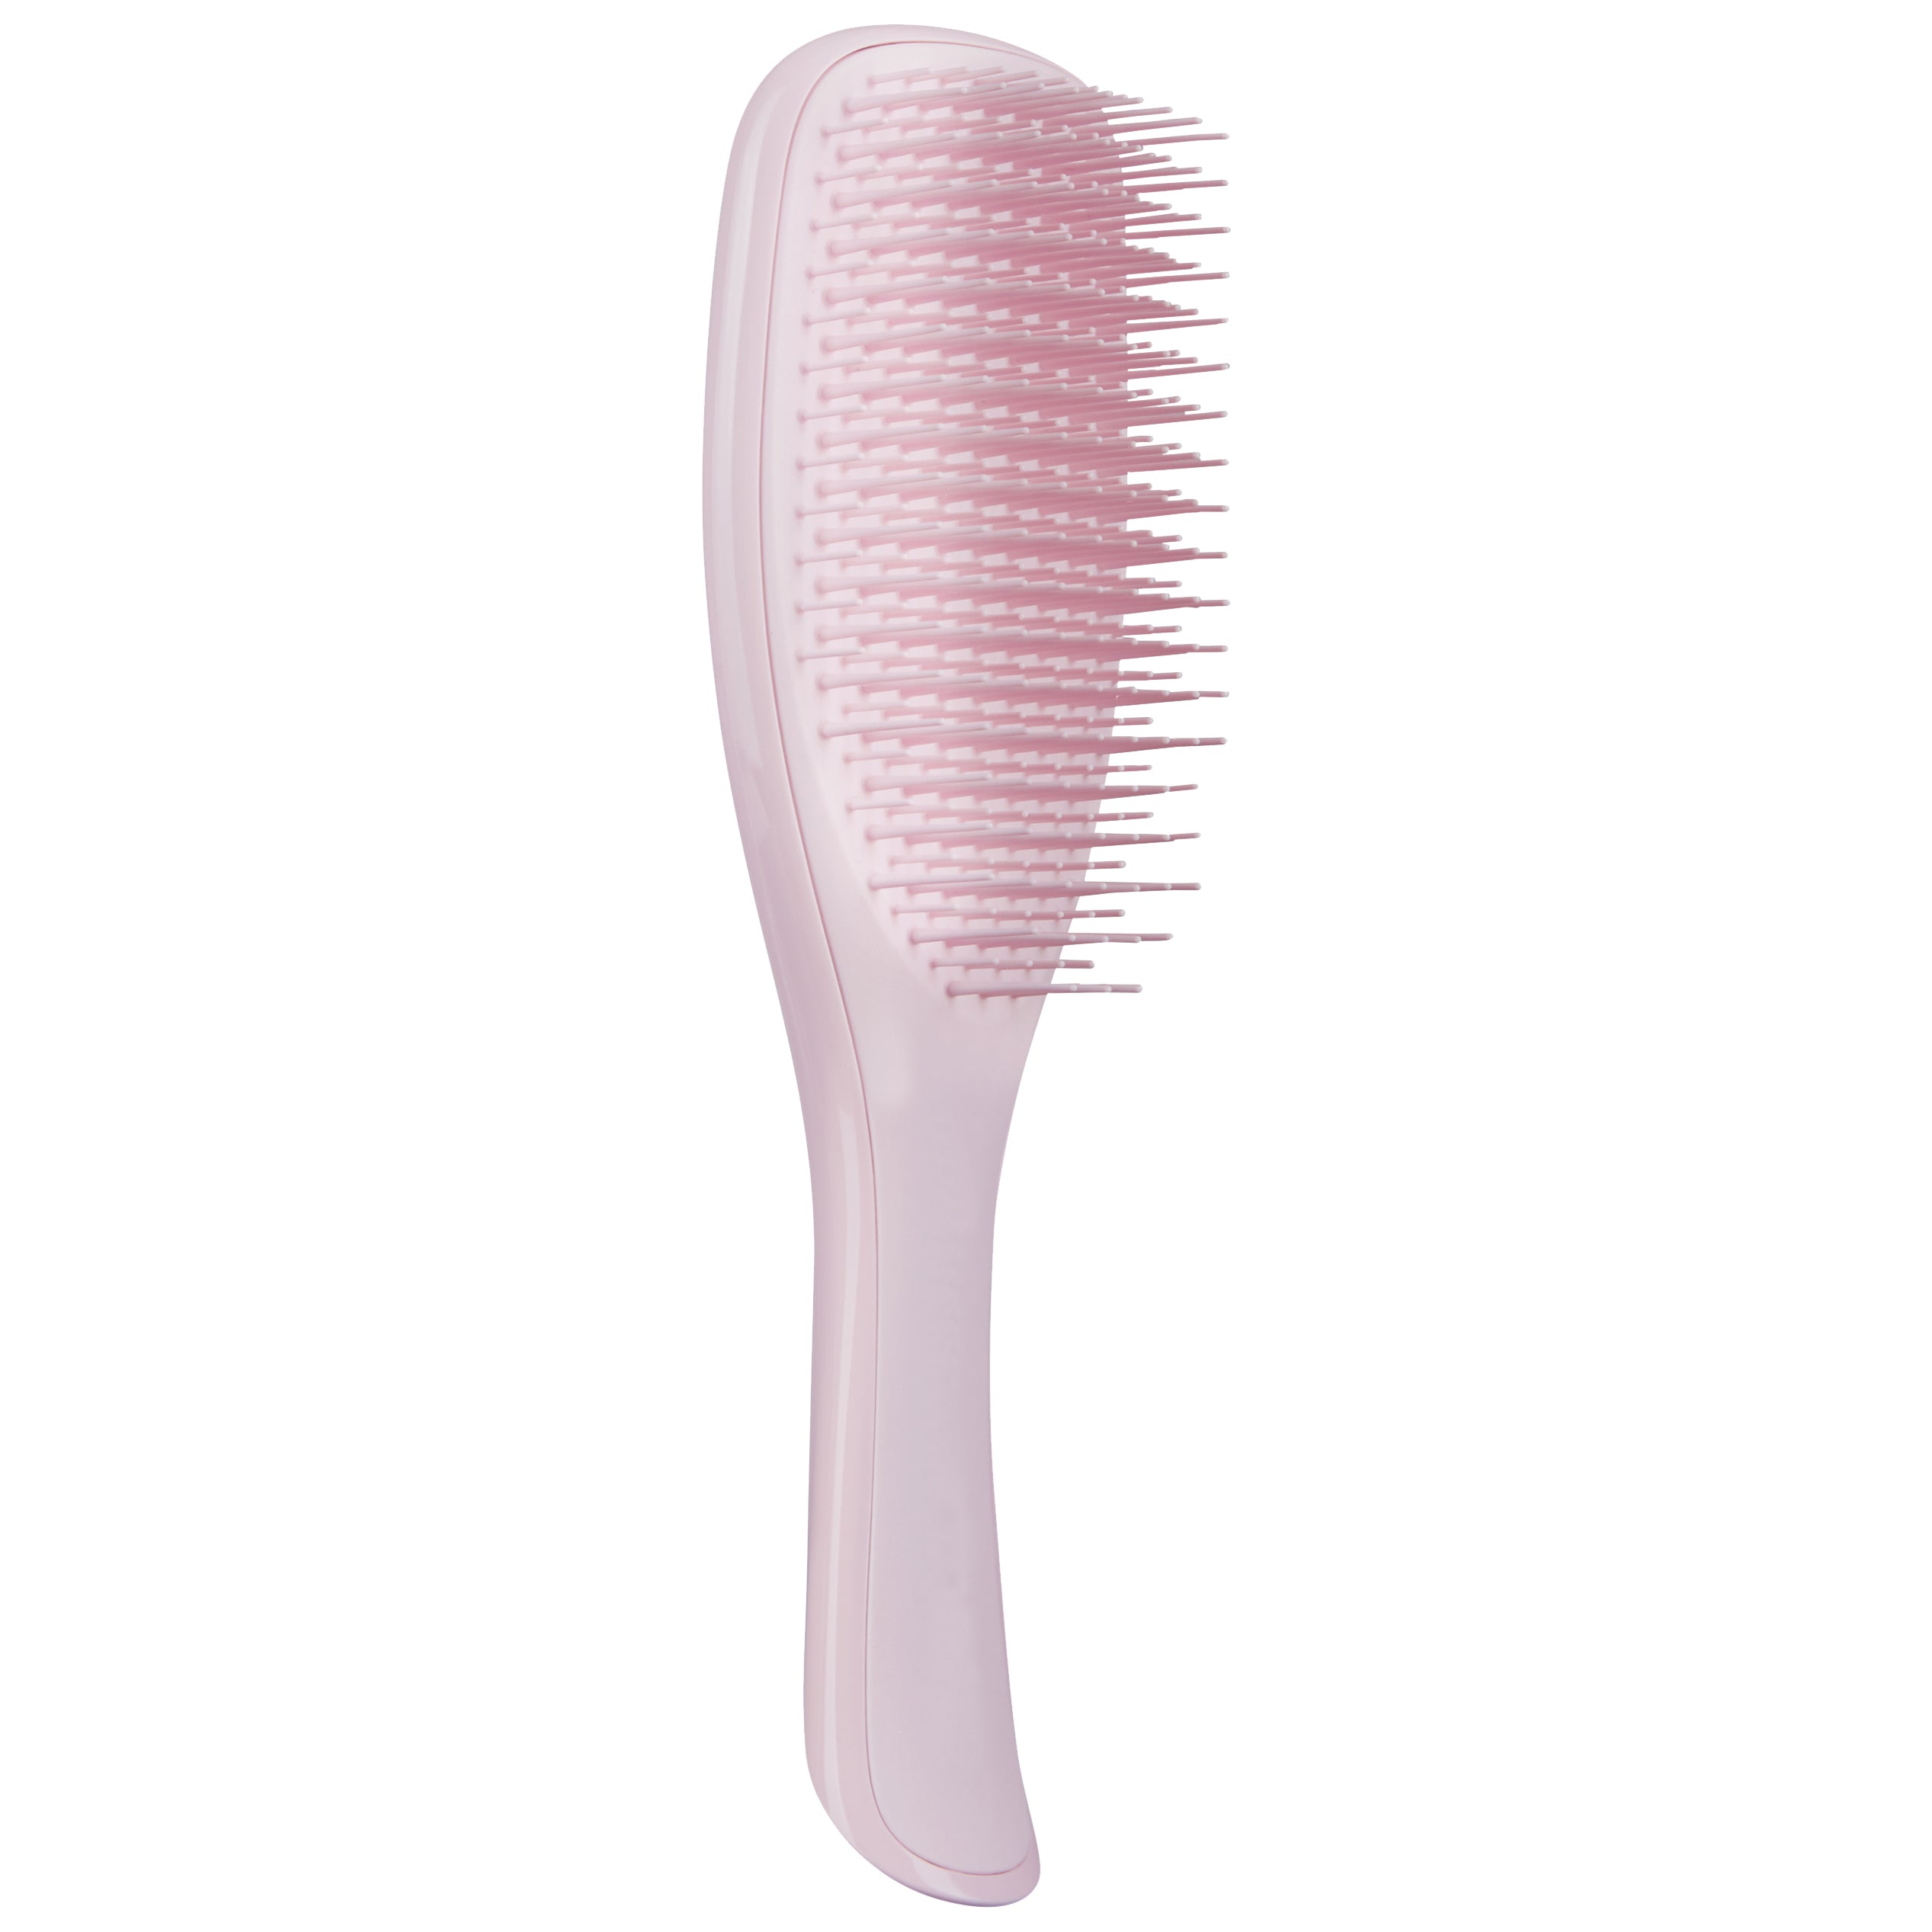 The Wet Detangler Hairbrush - Millennial Pink